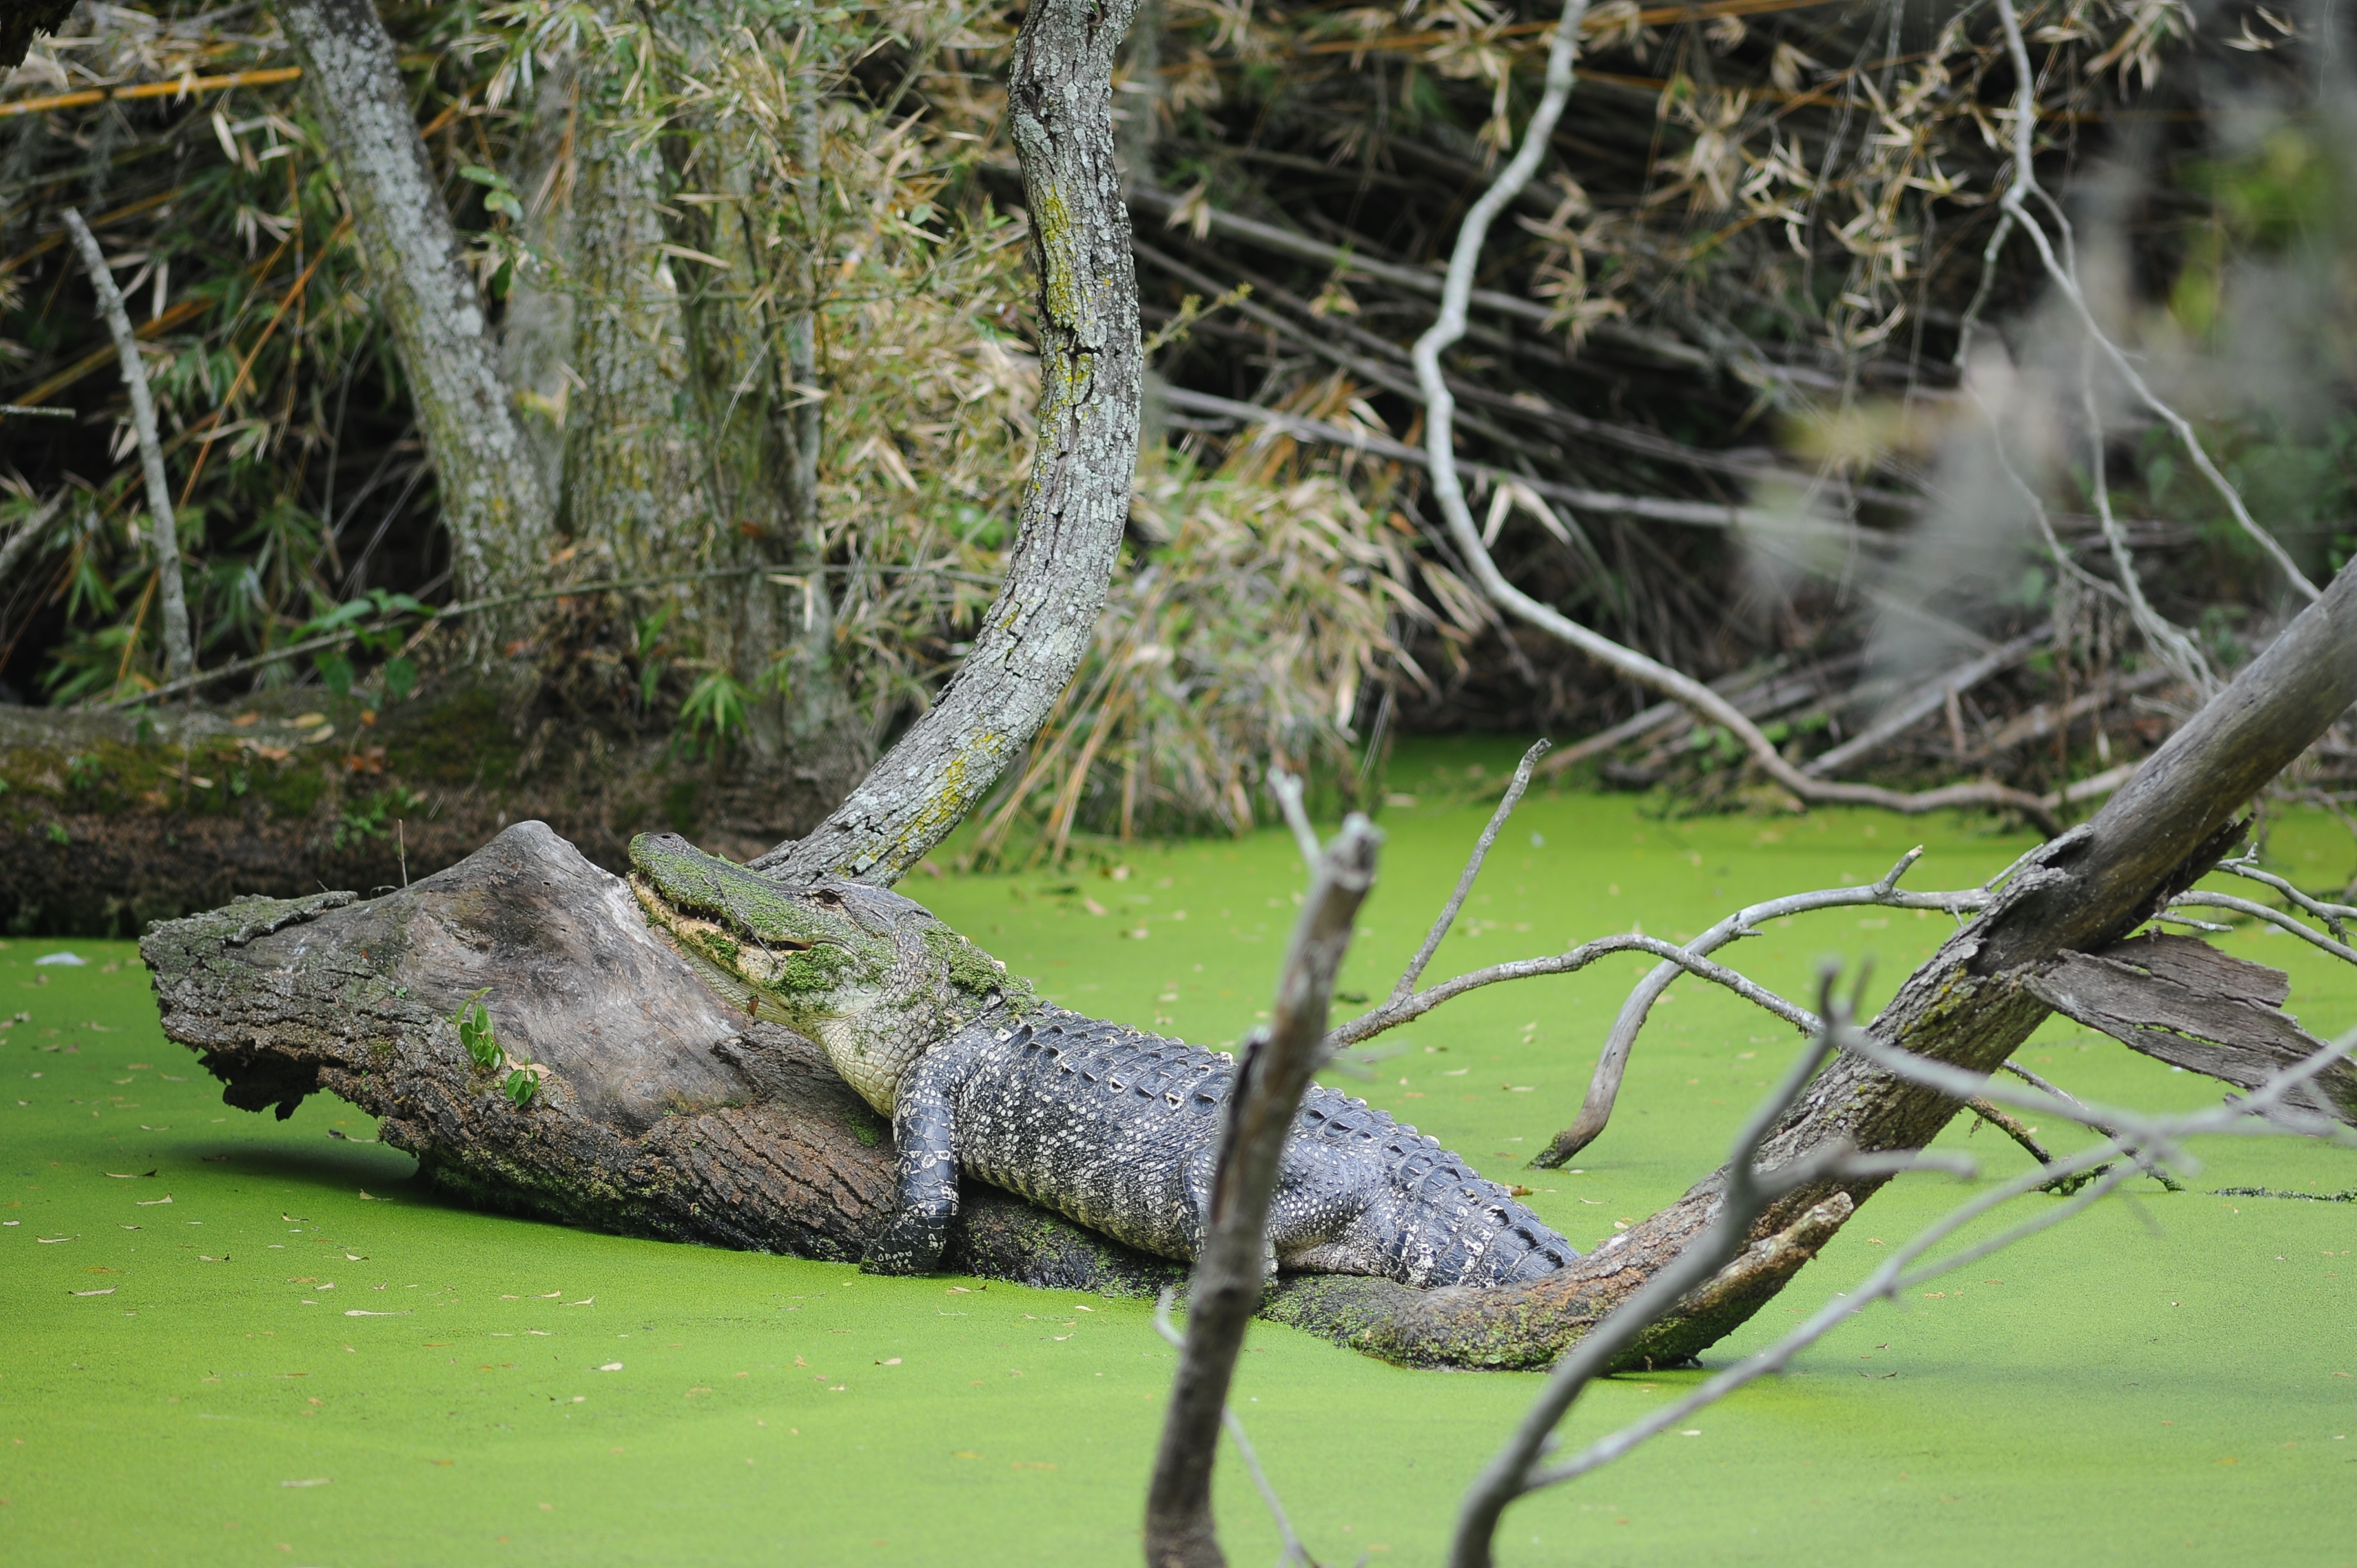 Alligator resting on a log in pond